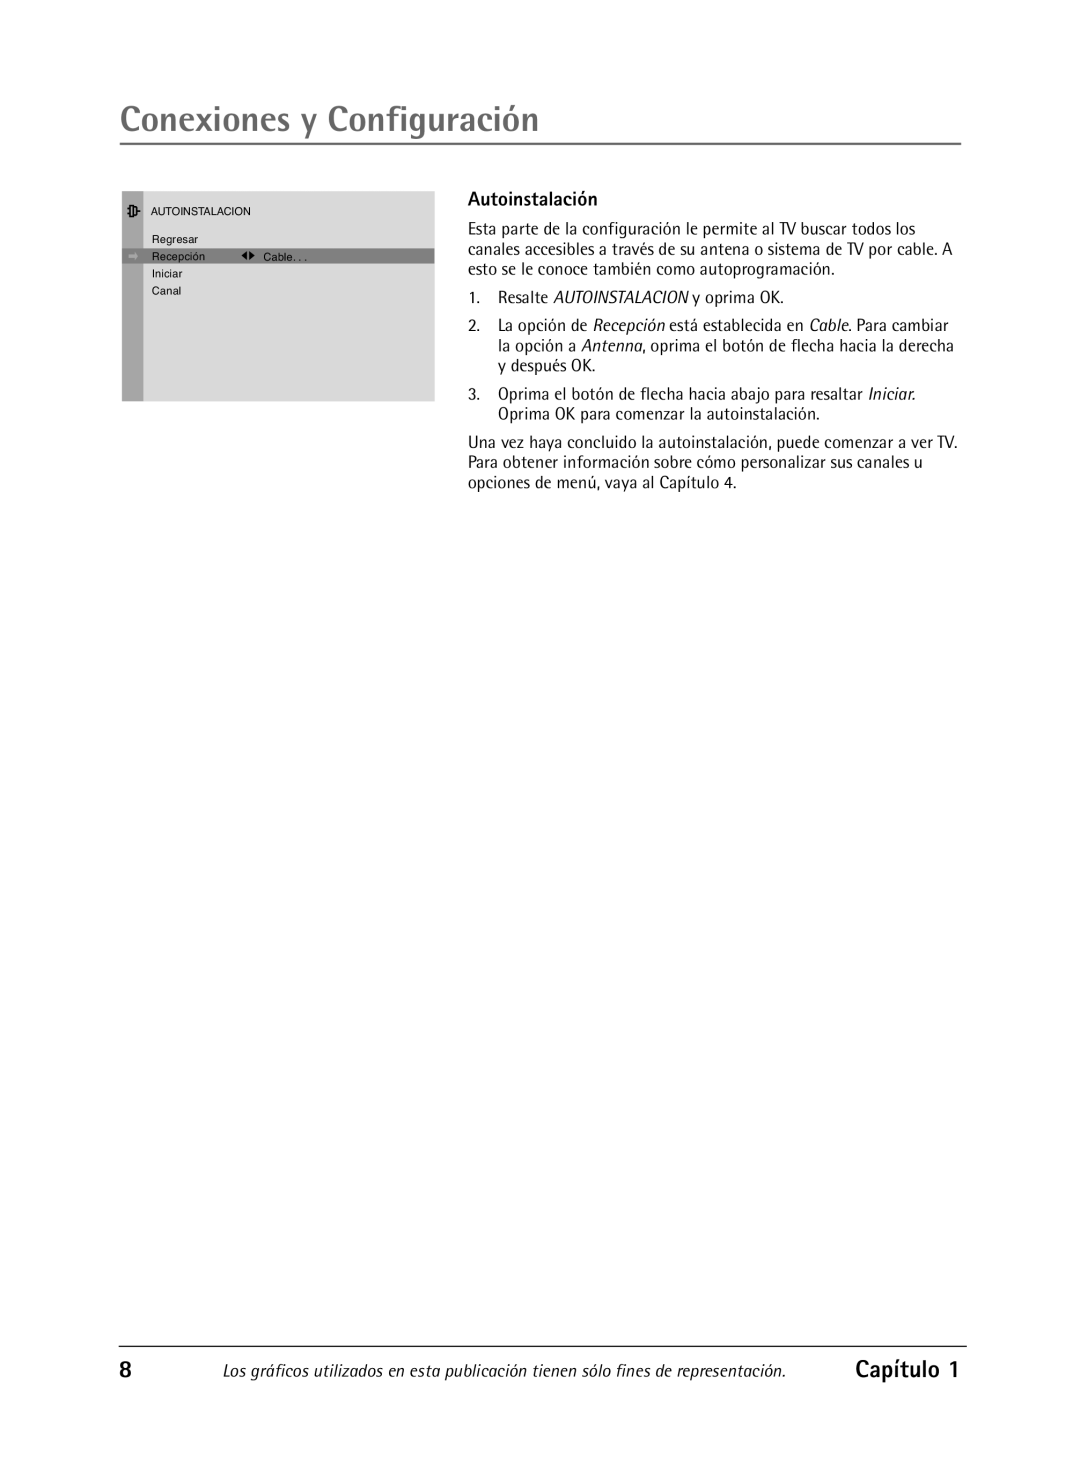 RCA Televison manual Autoinstalación, Conexiones y Configuración, Capítulo, Resalte AUTOINSTALACION y oprima OK 